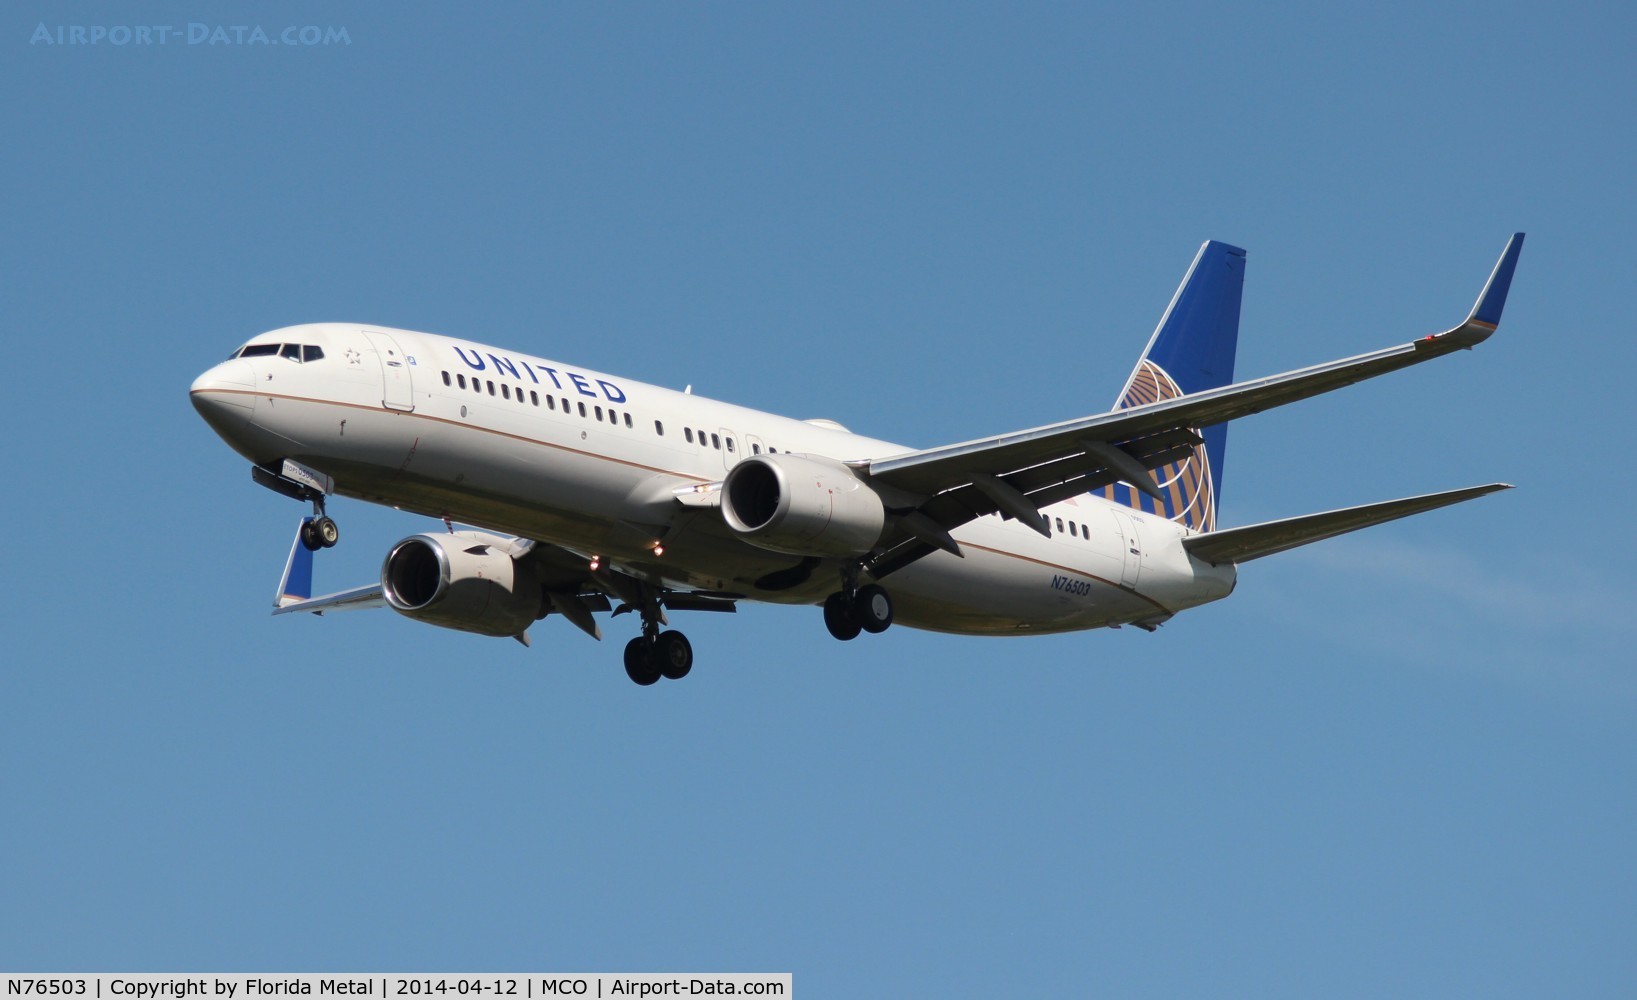 N76503, 2006 Boeing 737-824 C/N 33461, United